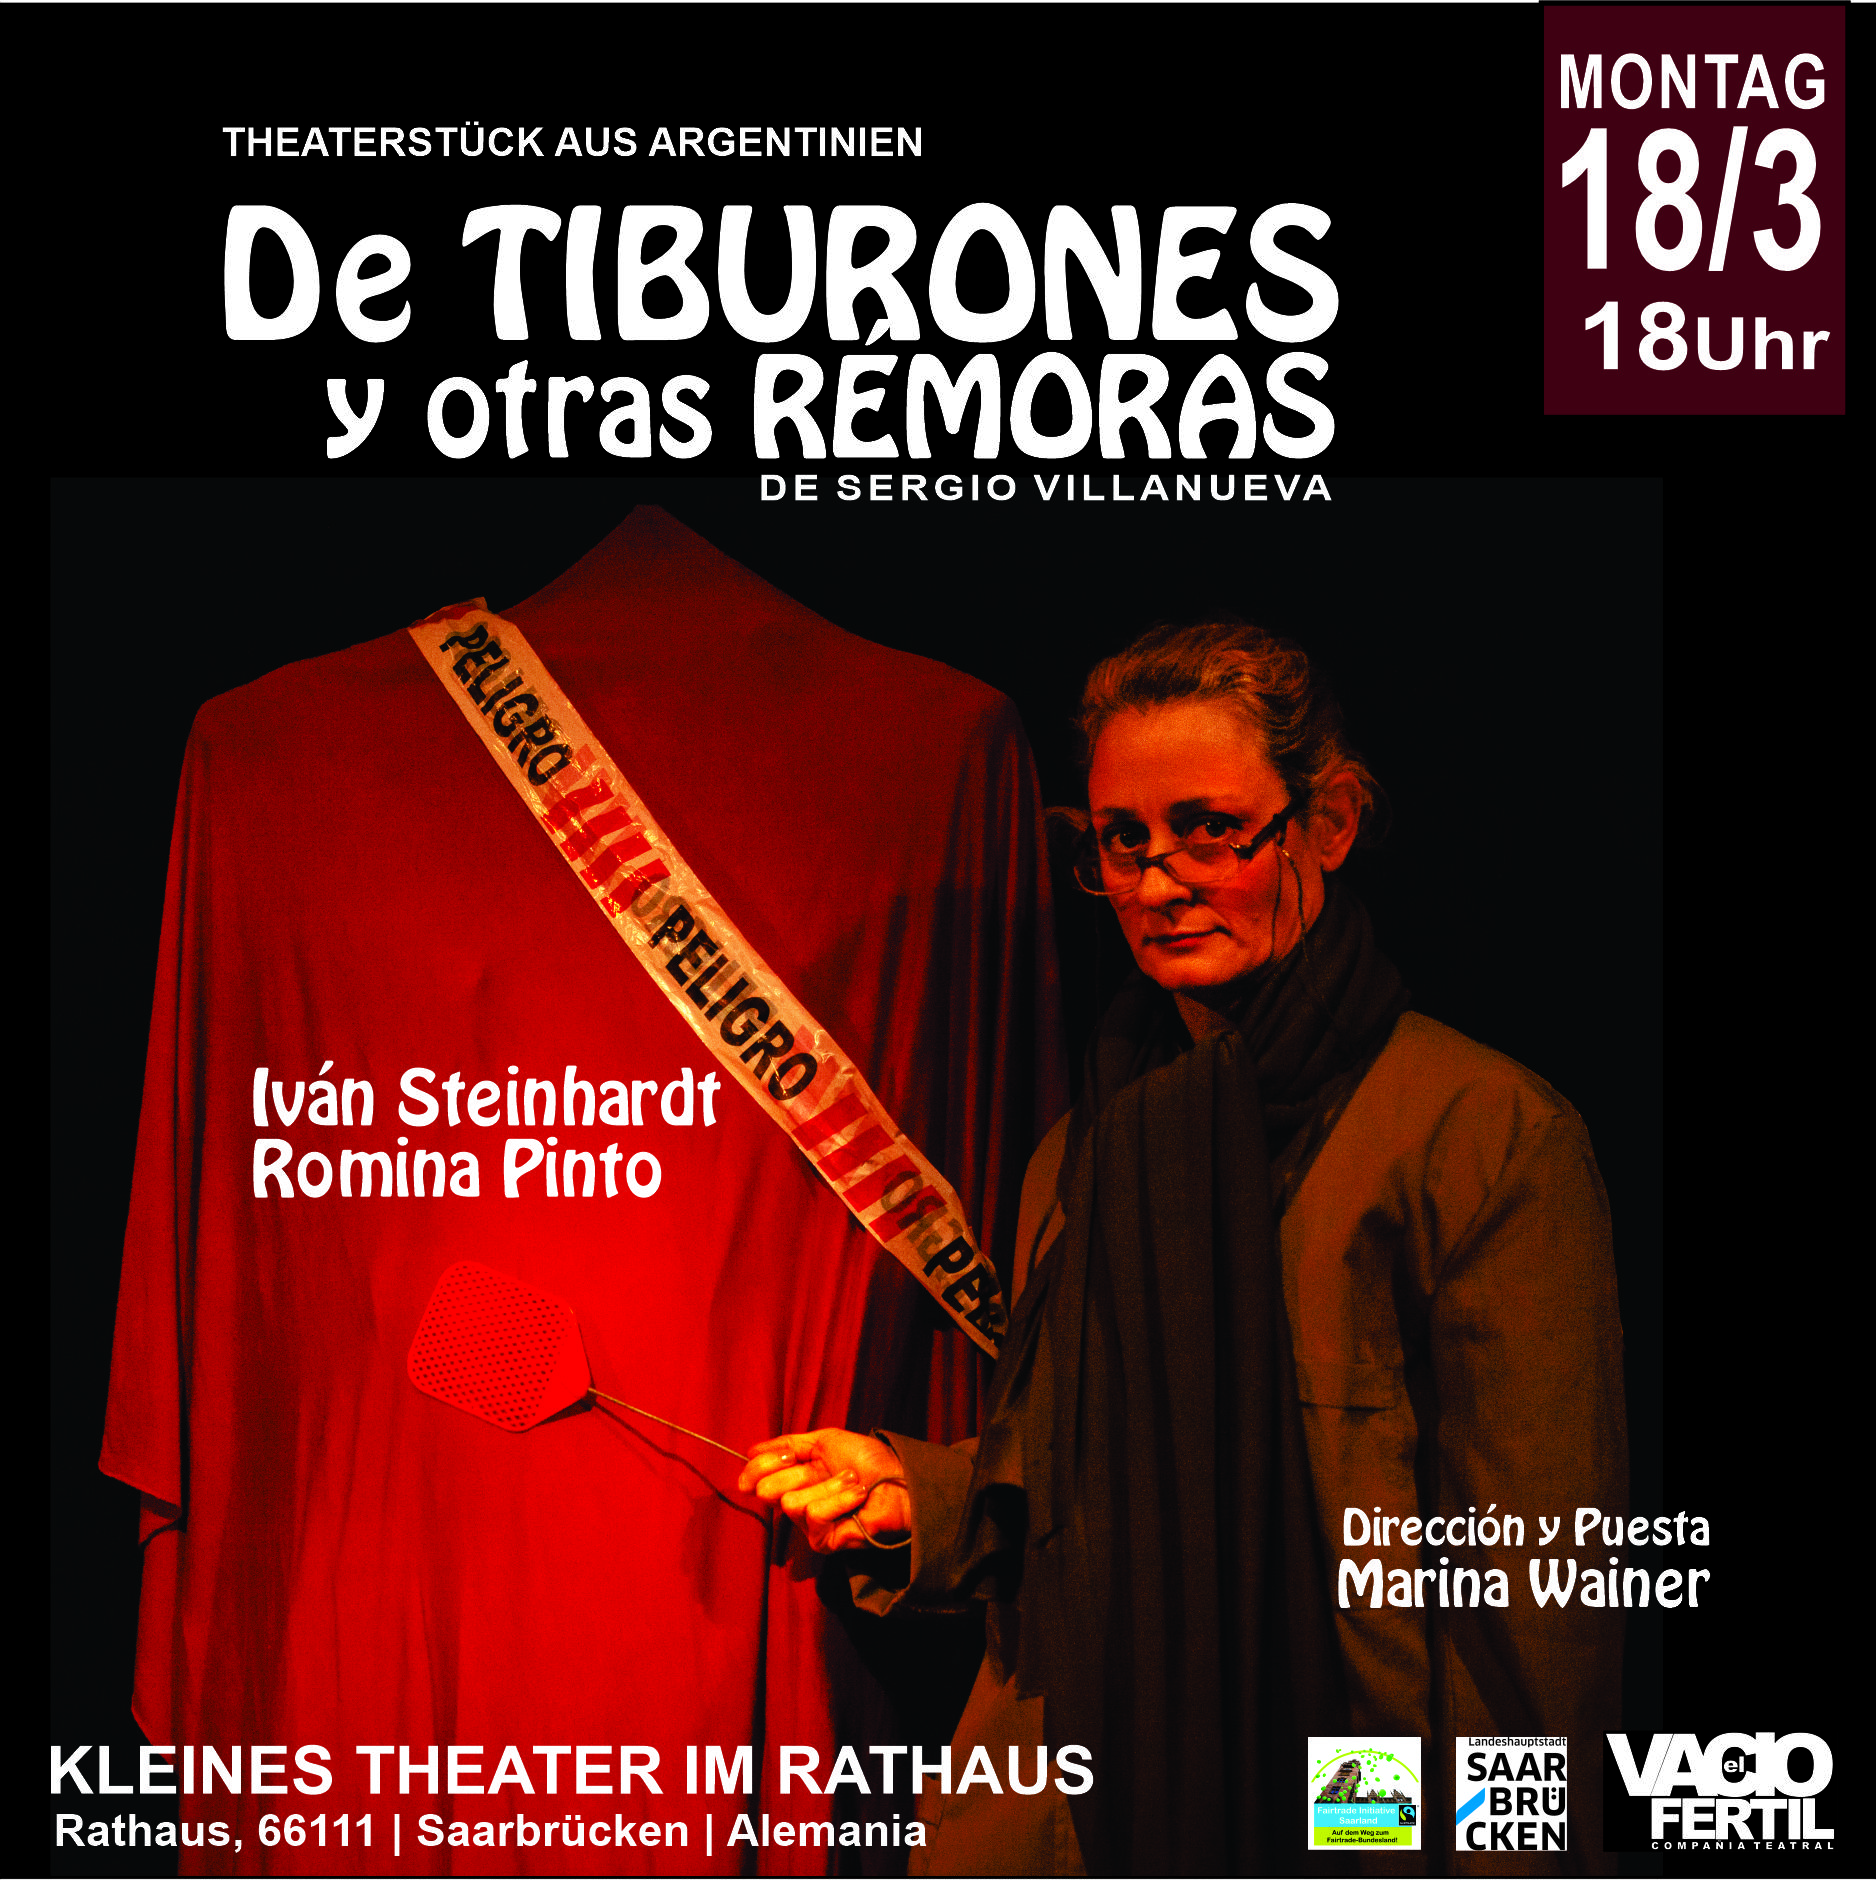 Bild einer Szene des Theaterstücks. Frau mit einer Fliegenklatsche in der Hand. Im Hintergrund der Text: Peligro.